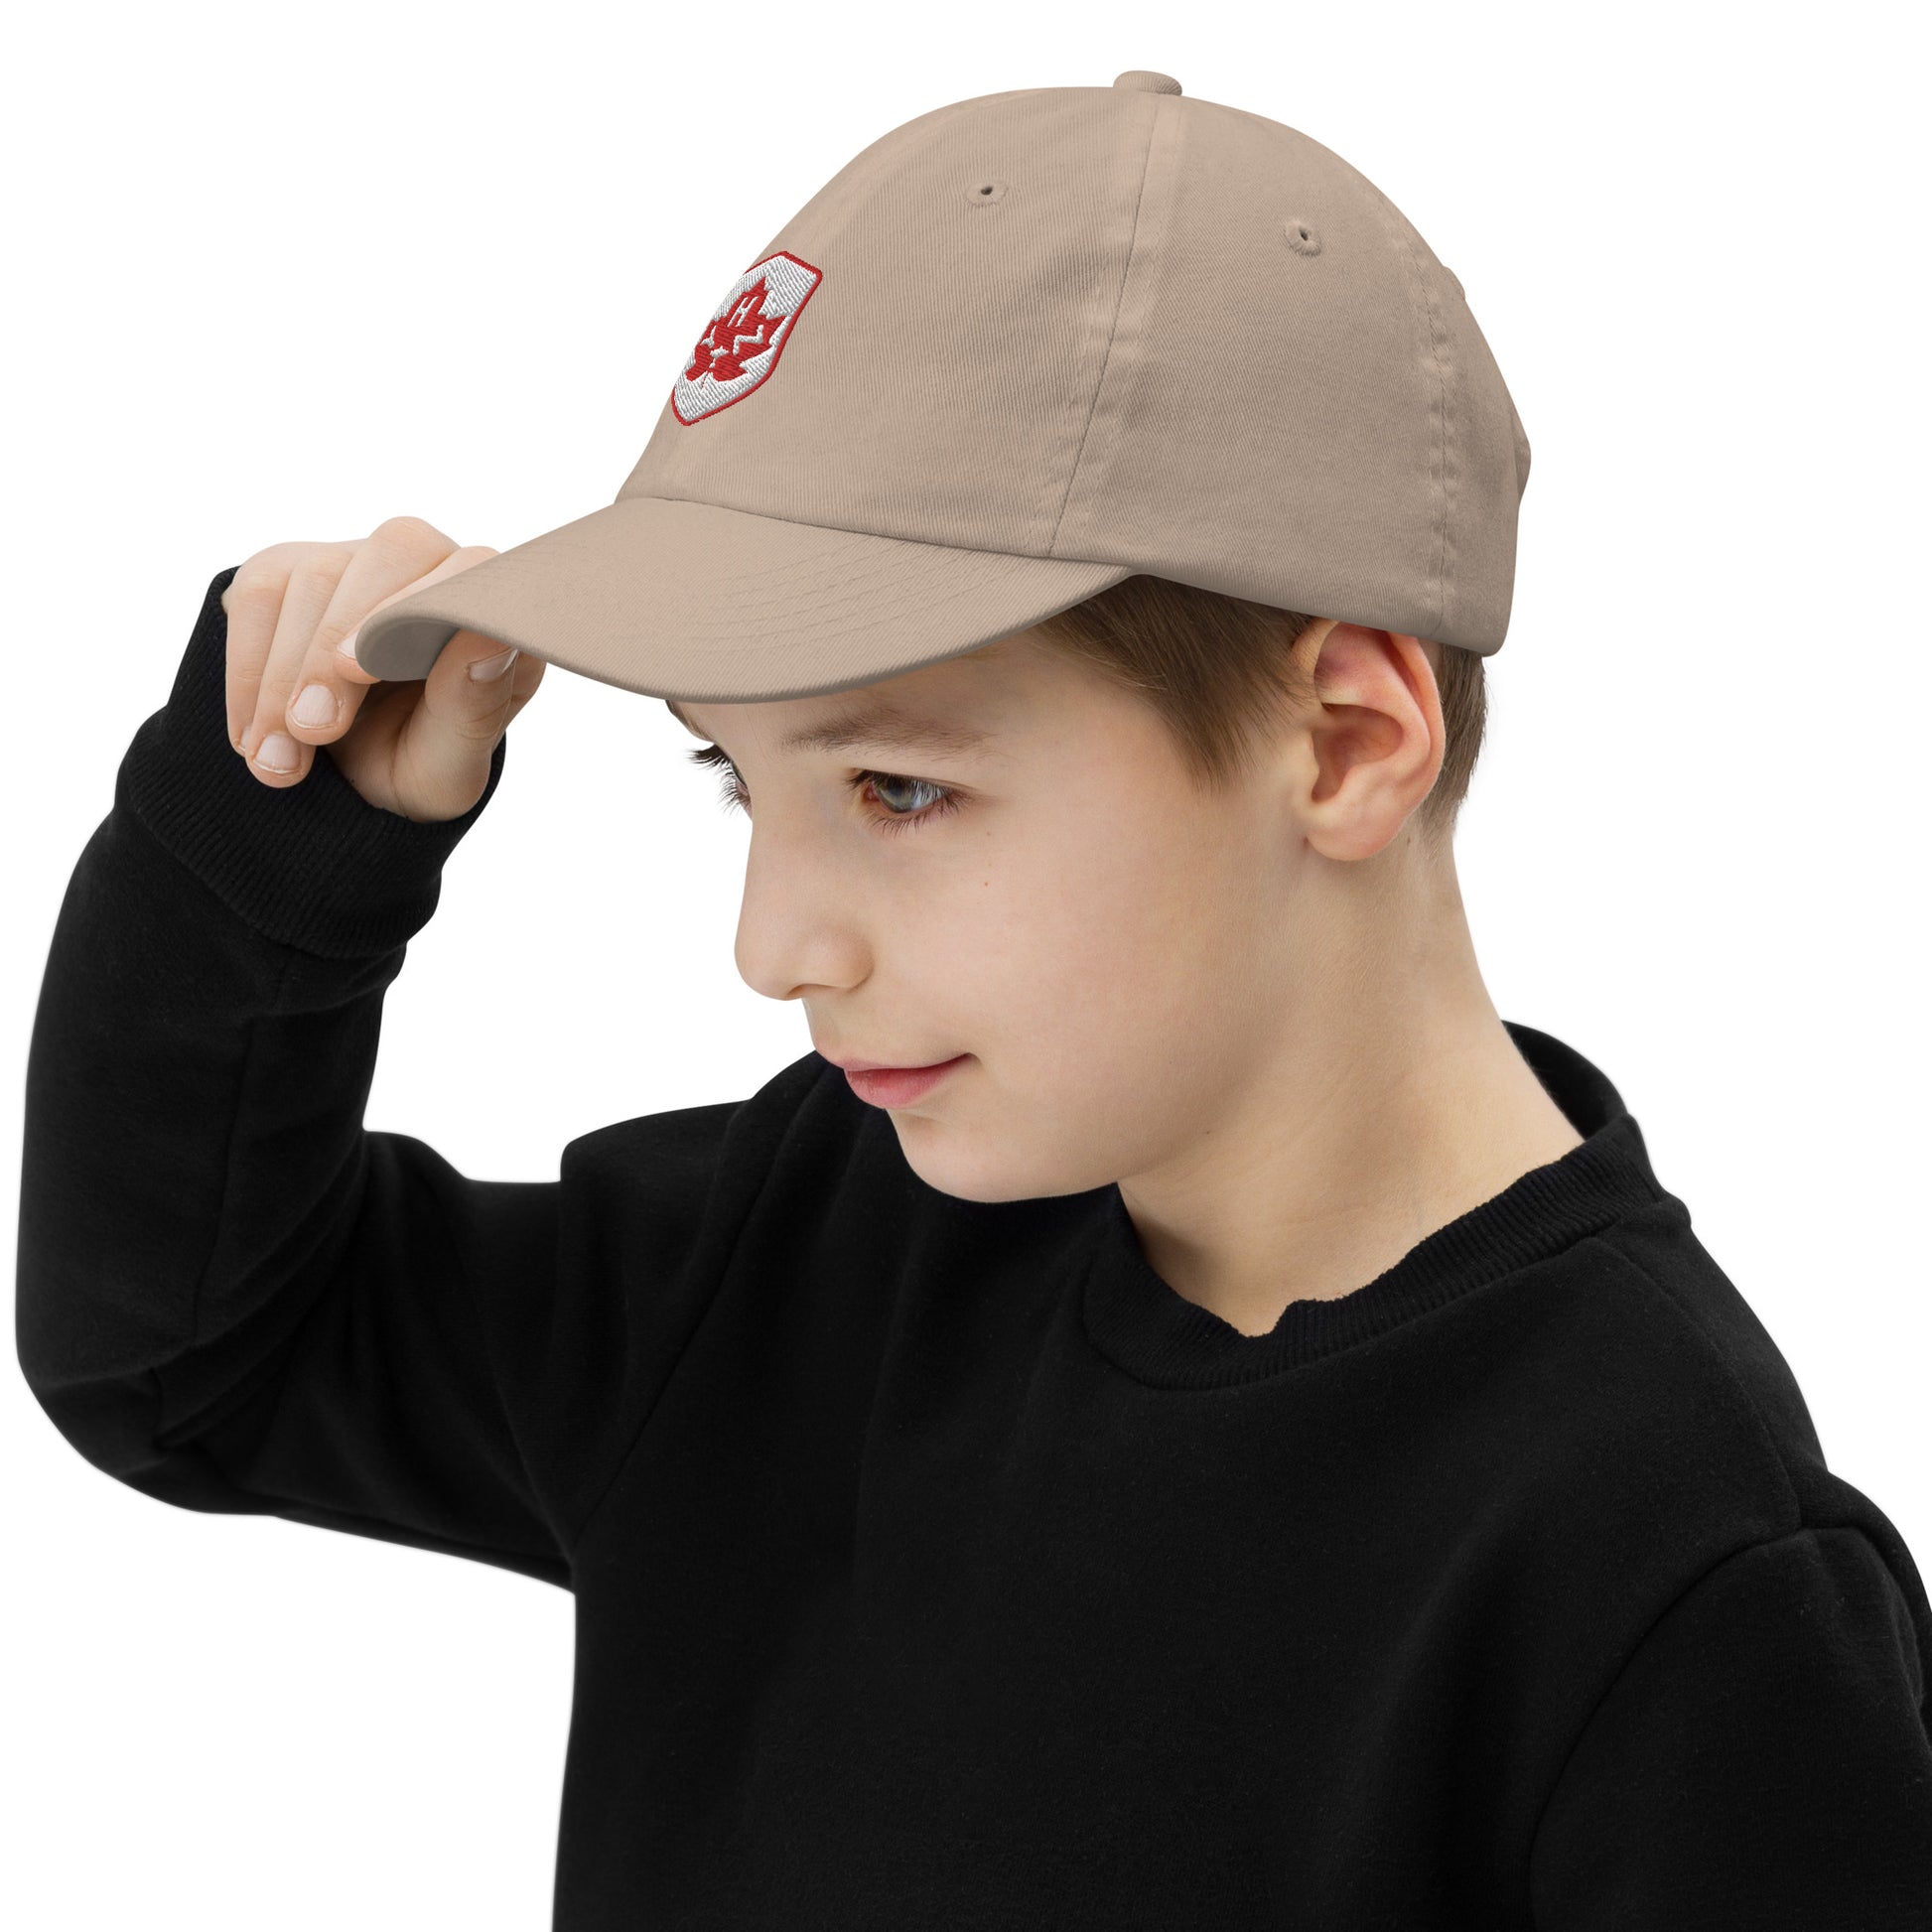 Maple Leaf Kid's Cap - Red/White • YHZ Halifax • YHM Designs - Image 10